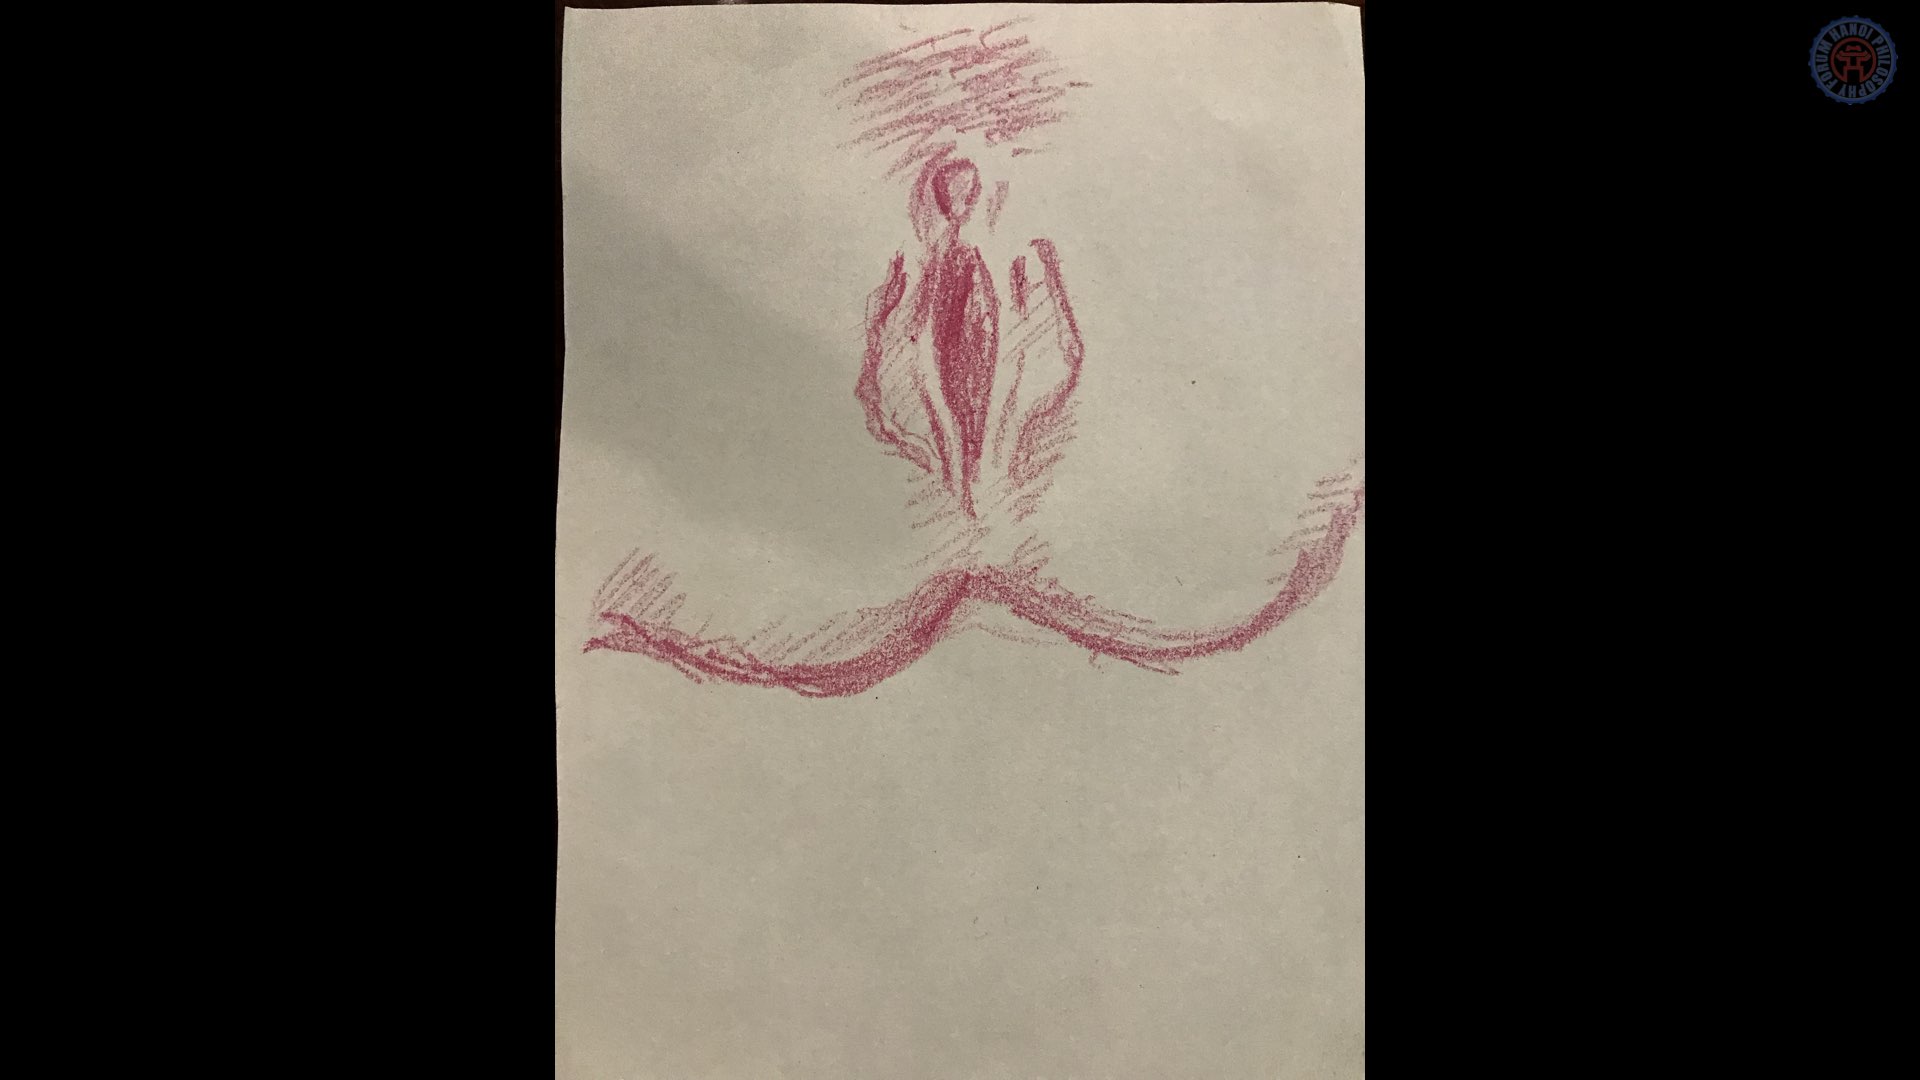 2019.04.17-18 Penises & Vaginas Slide Images.116.jpeg